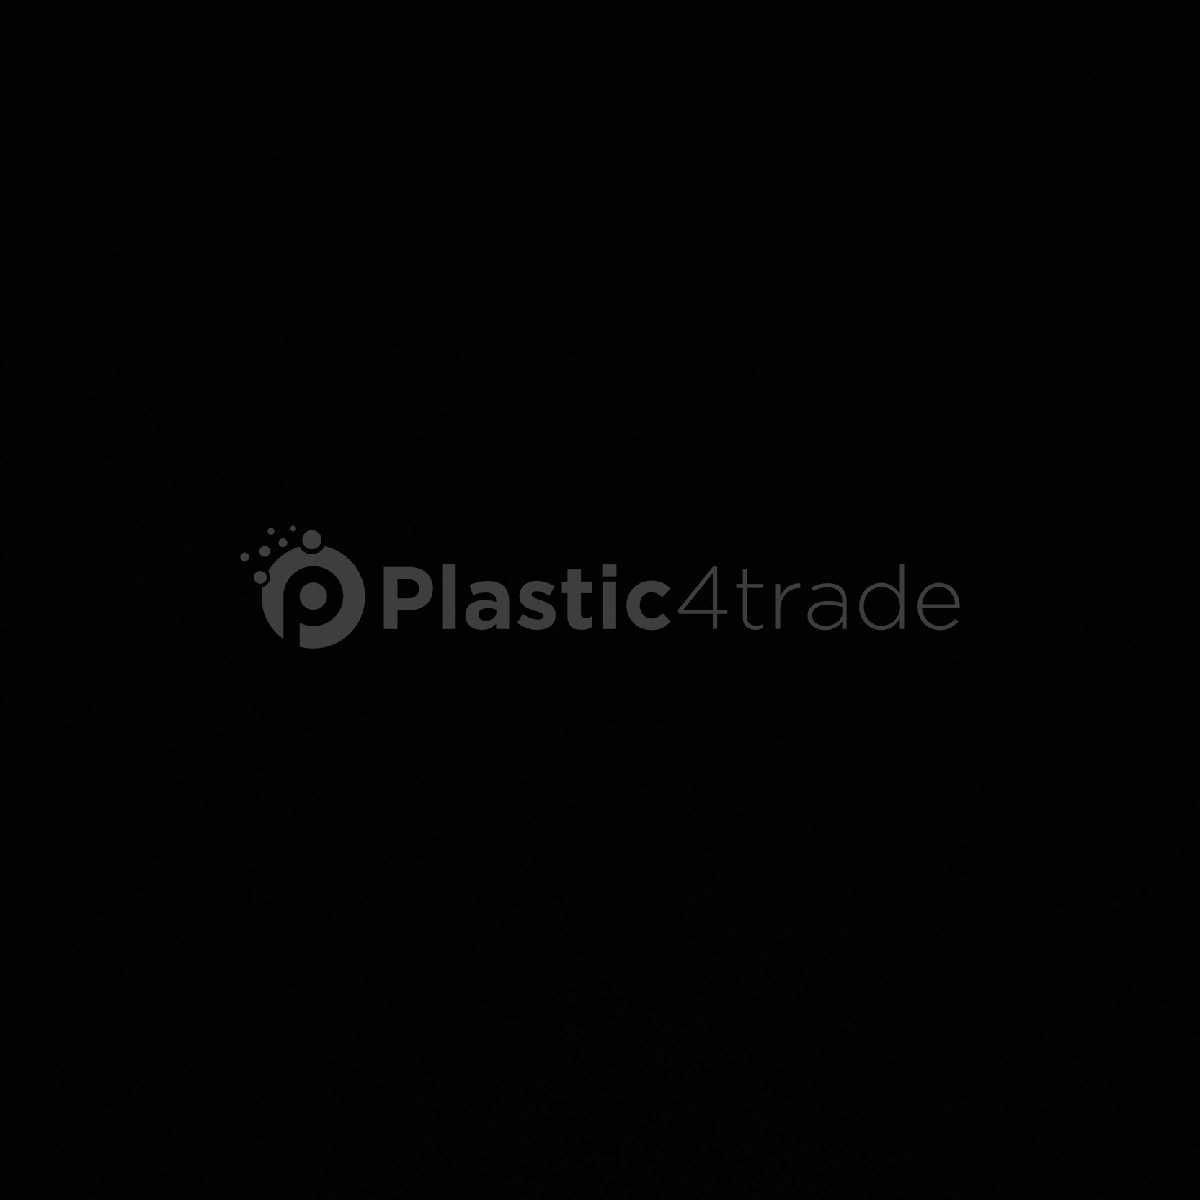 ALL PLASTIC SCRAP HDPE Grinding Mix Scrap punjab india Plastic4trade